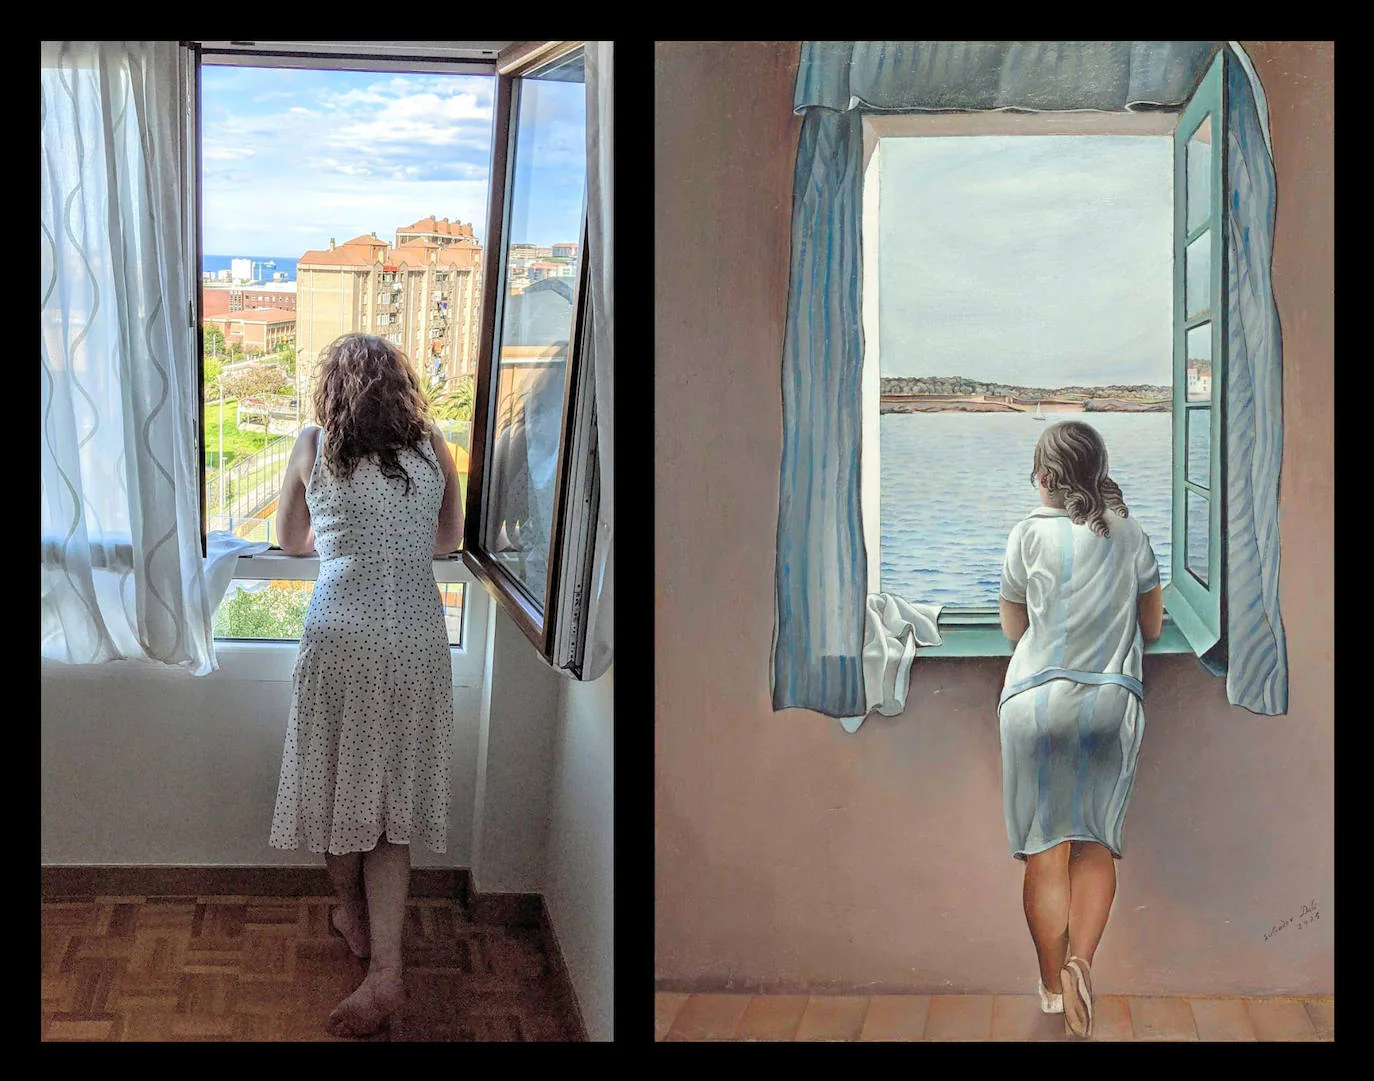 Título del cuadro: ‘Figura en una ventana’. Autor/a: Salvador Dalí. Pintado: 1925. Maestro/a imitador: Magdalena Sierra, Maestra de Primaria.